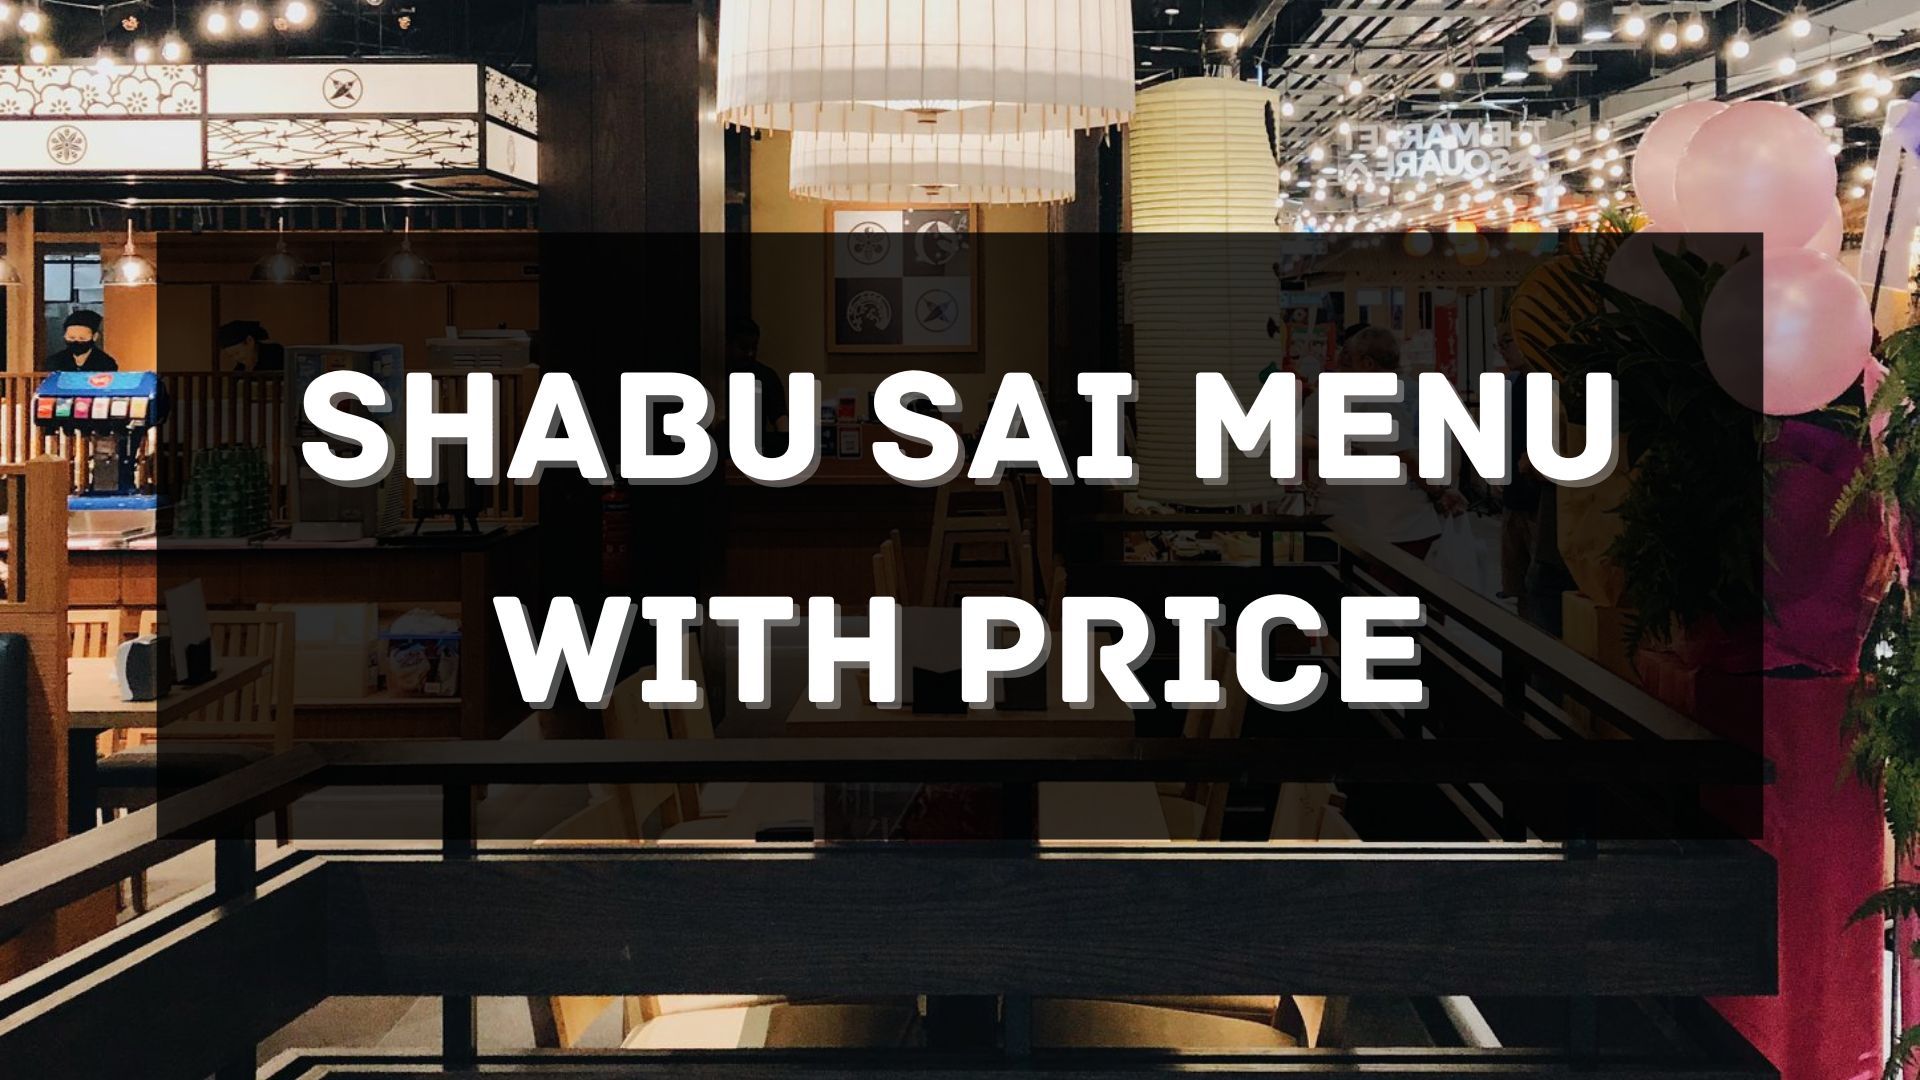 shabu sai menu prices singapore